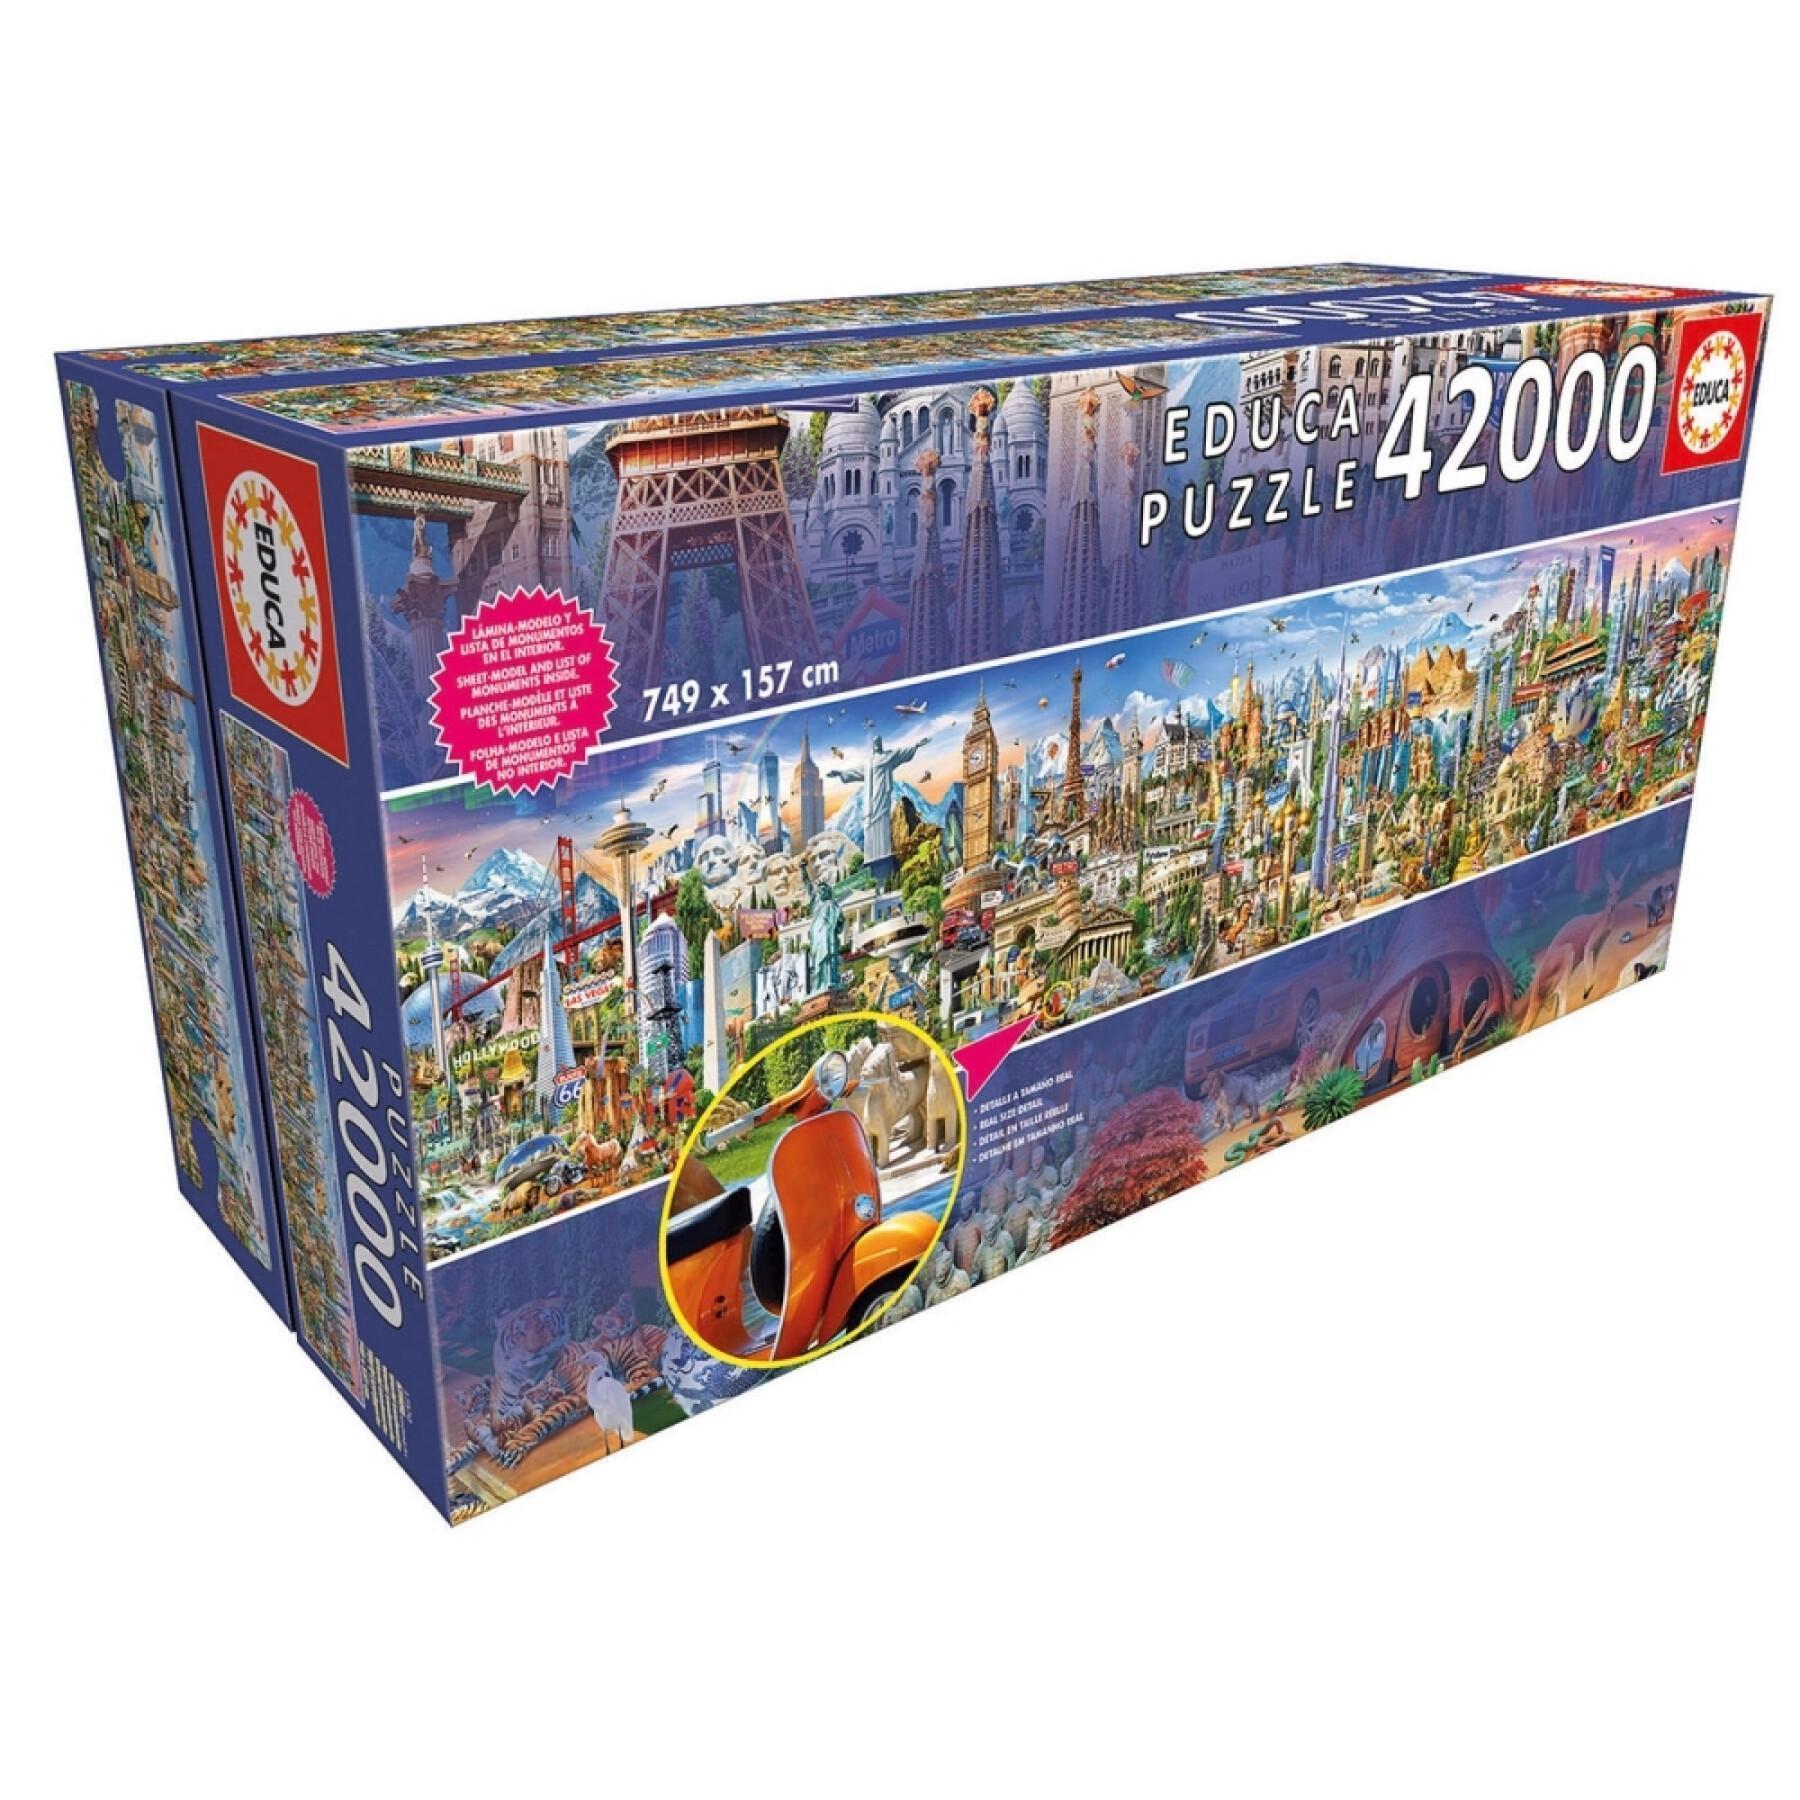 42000 piece puzzle Educa Vuelta Al Mundo